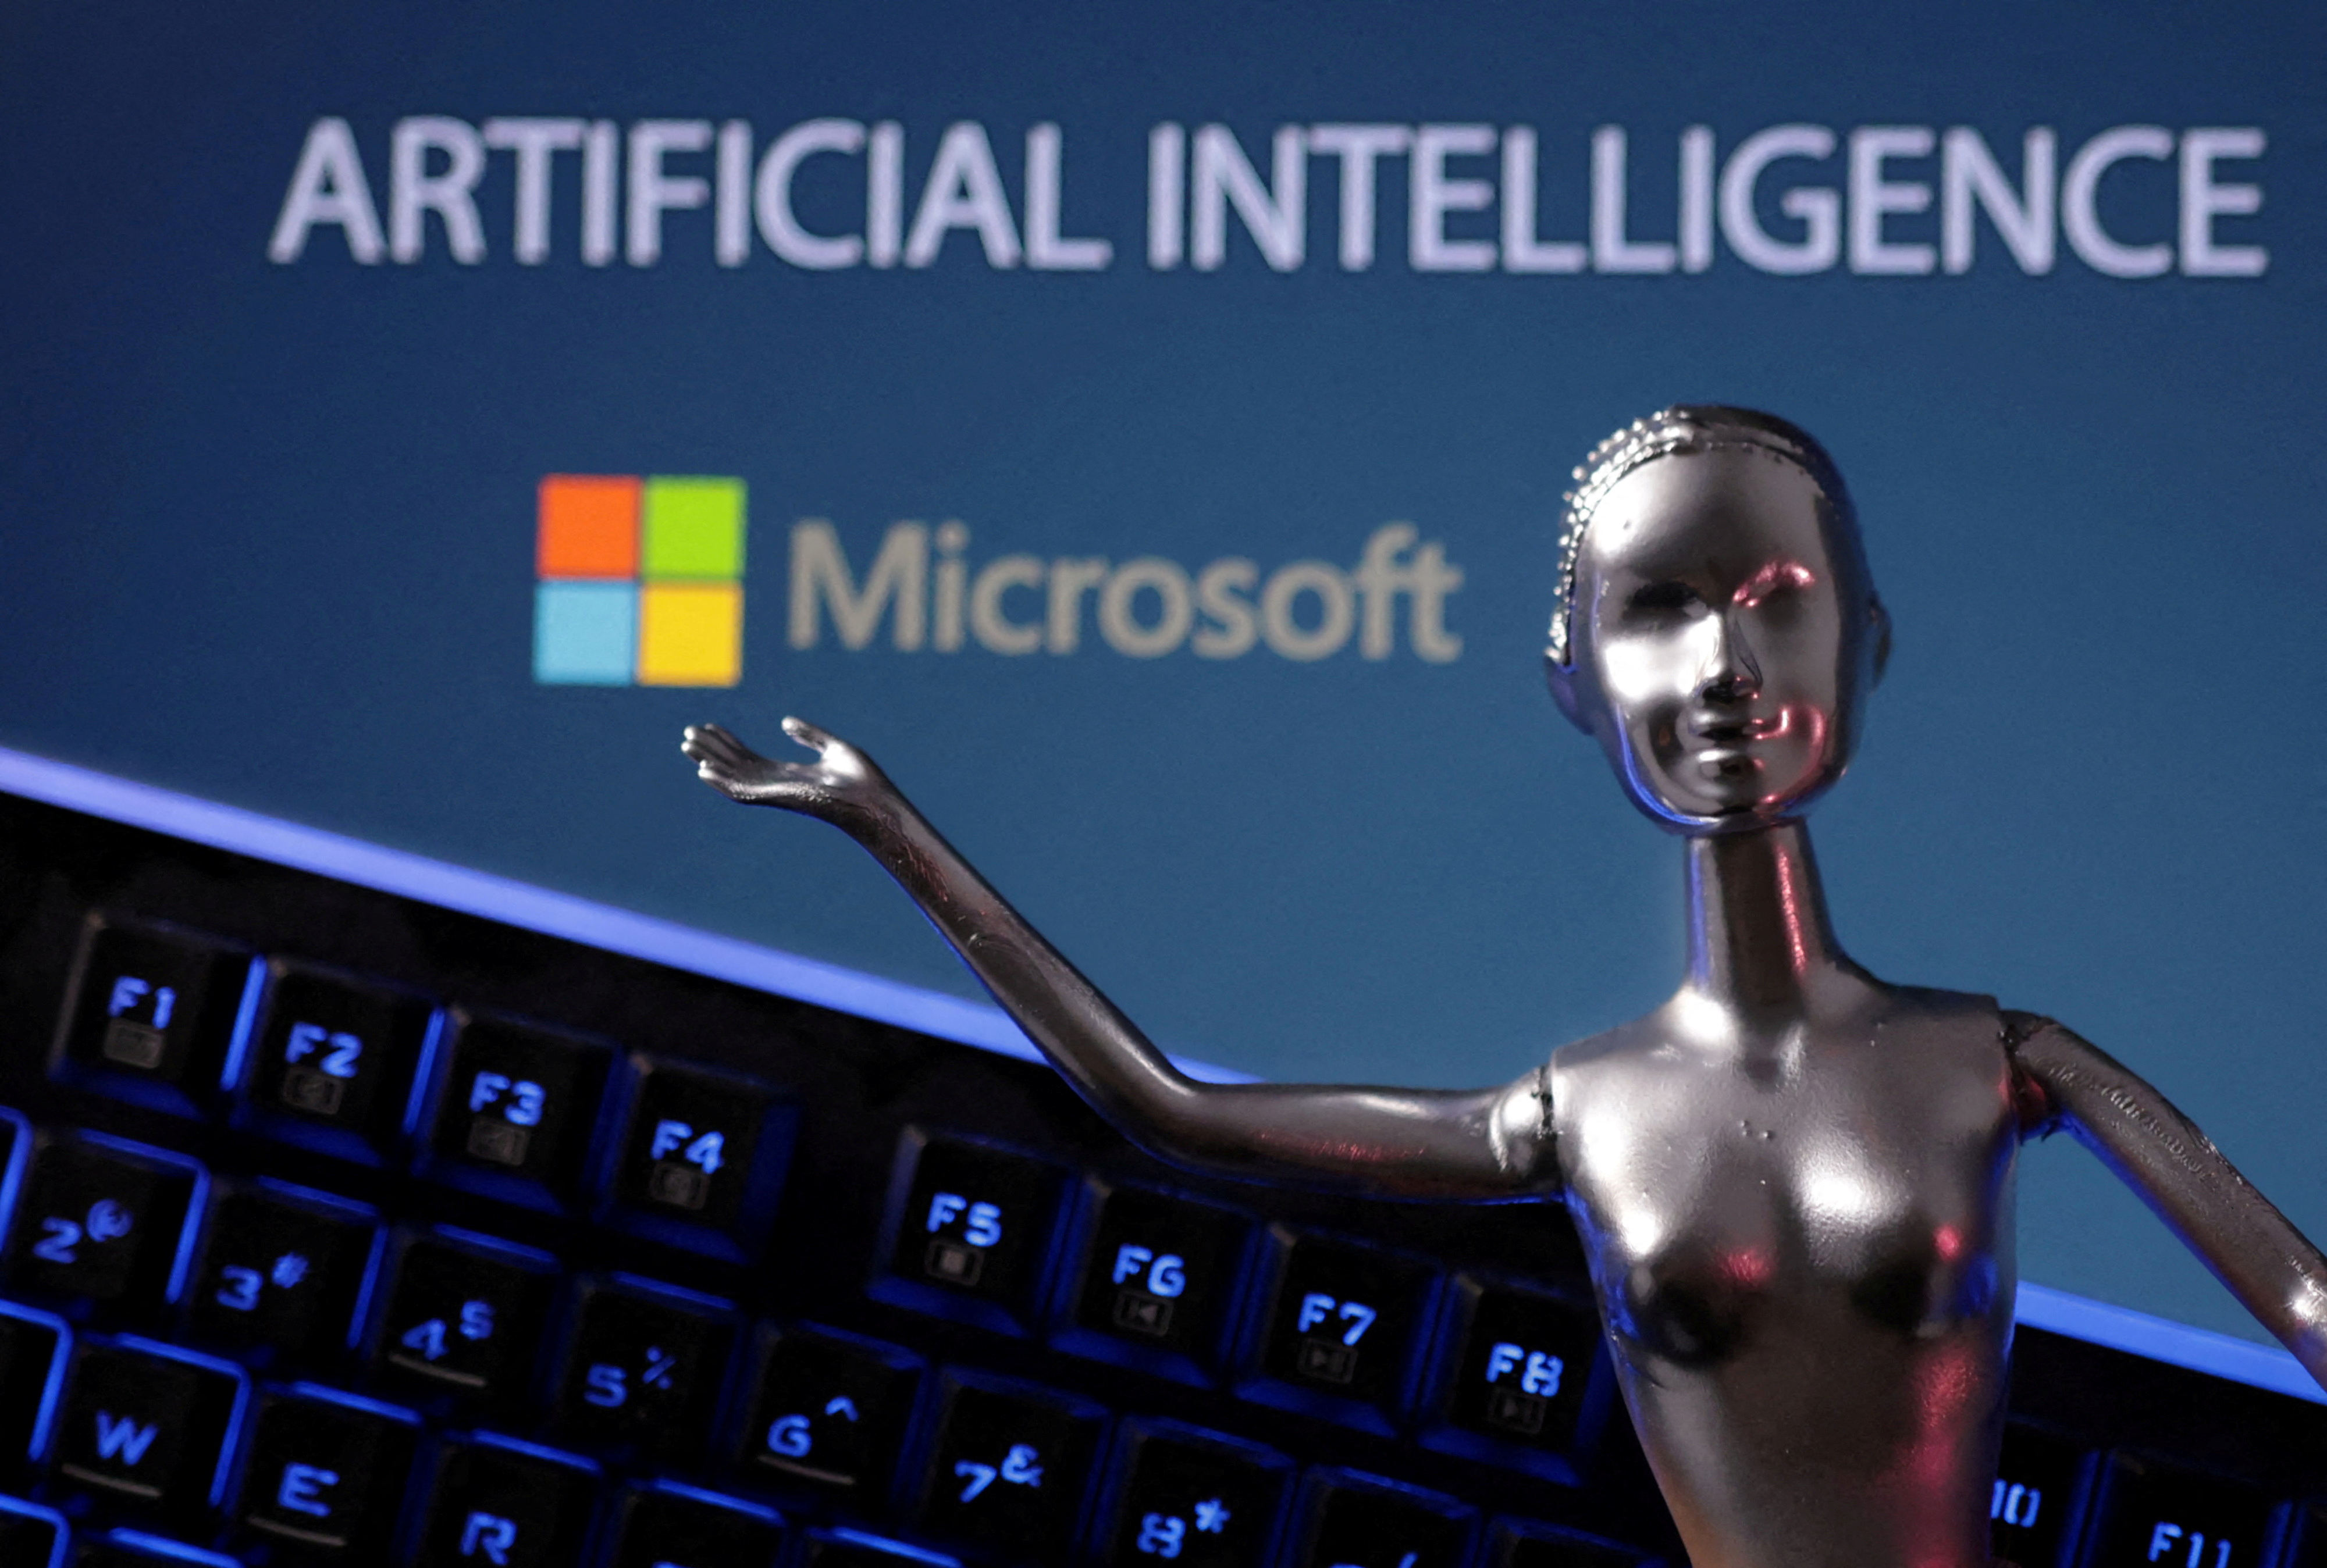 TomTom vil skabe AI-drevet stemmeassistent til biler i samarbejde med Microsoft